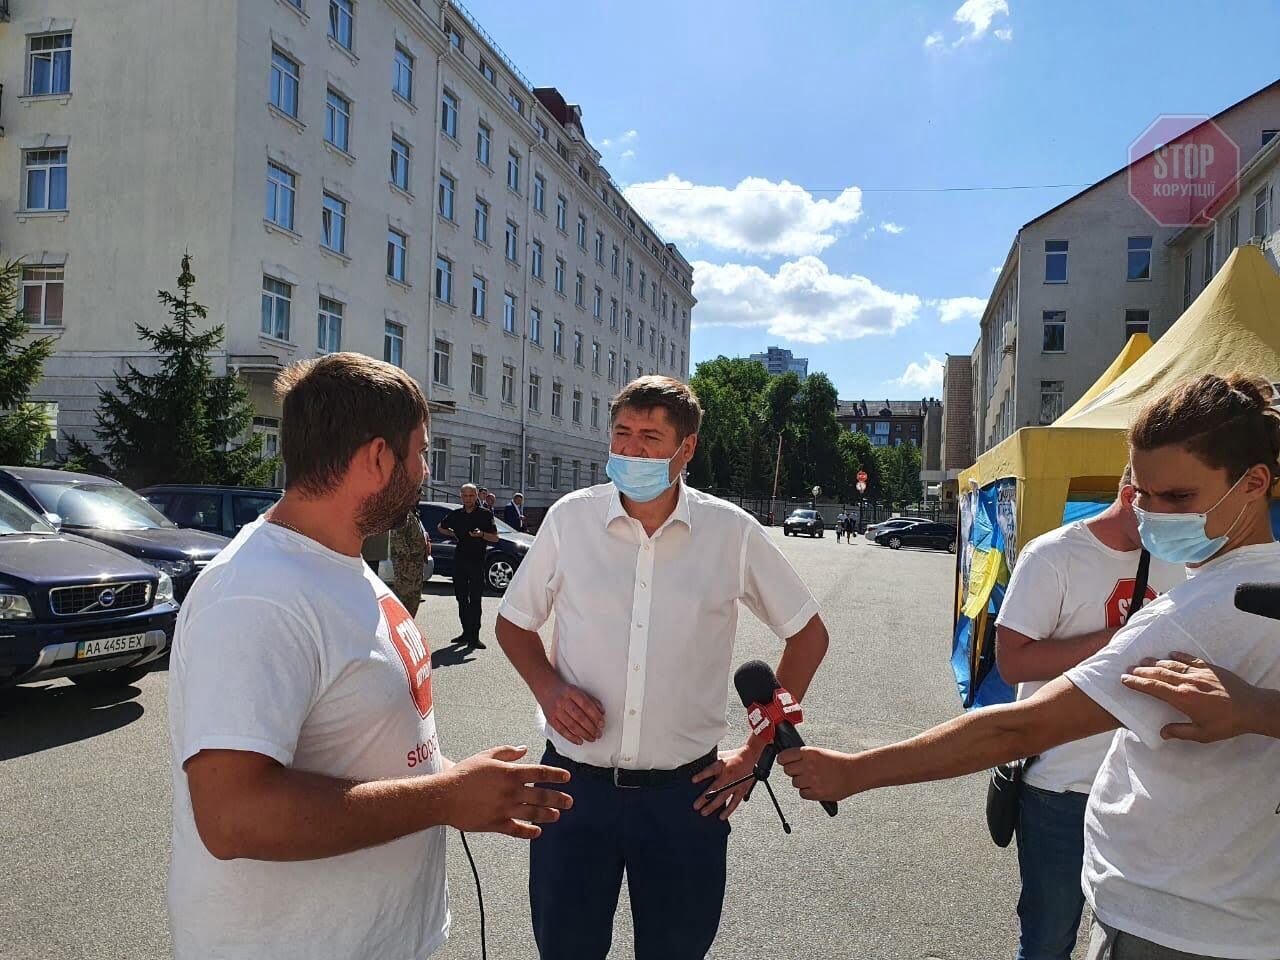  Активісти звернулись до атестаційної комісії через зашкварених прокурорів Чечітка та Тілика. Фото: СтопКор.